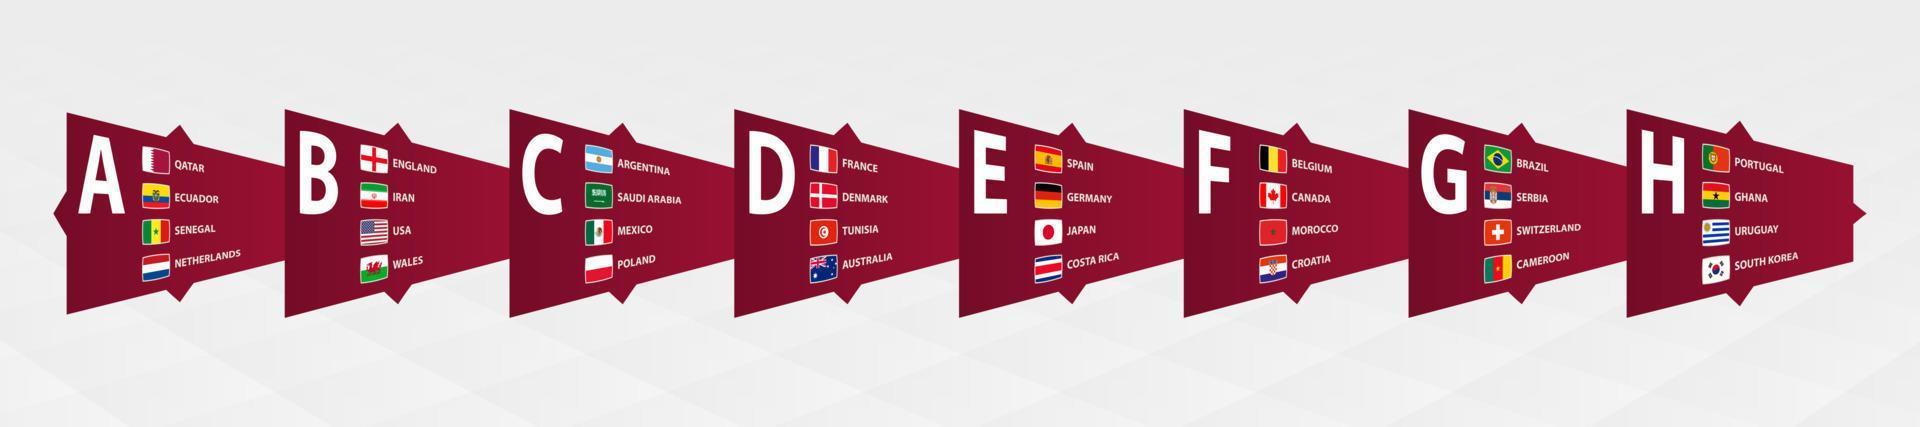 Amerikaans voetbal toernooi 2022 met vlag van deelnemers gesorteerd door groep. vector